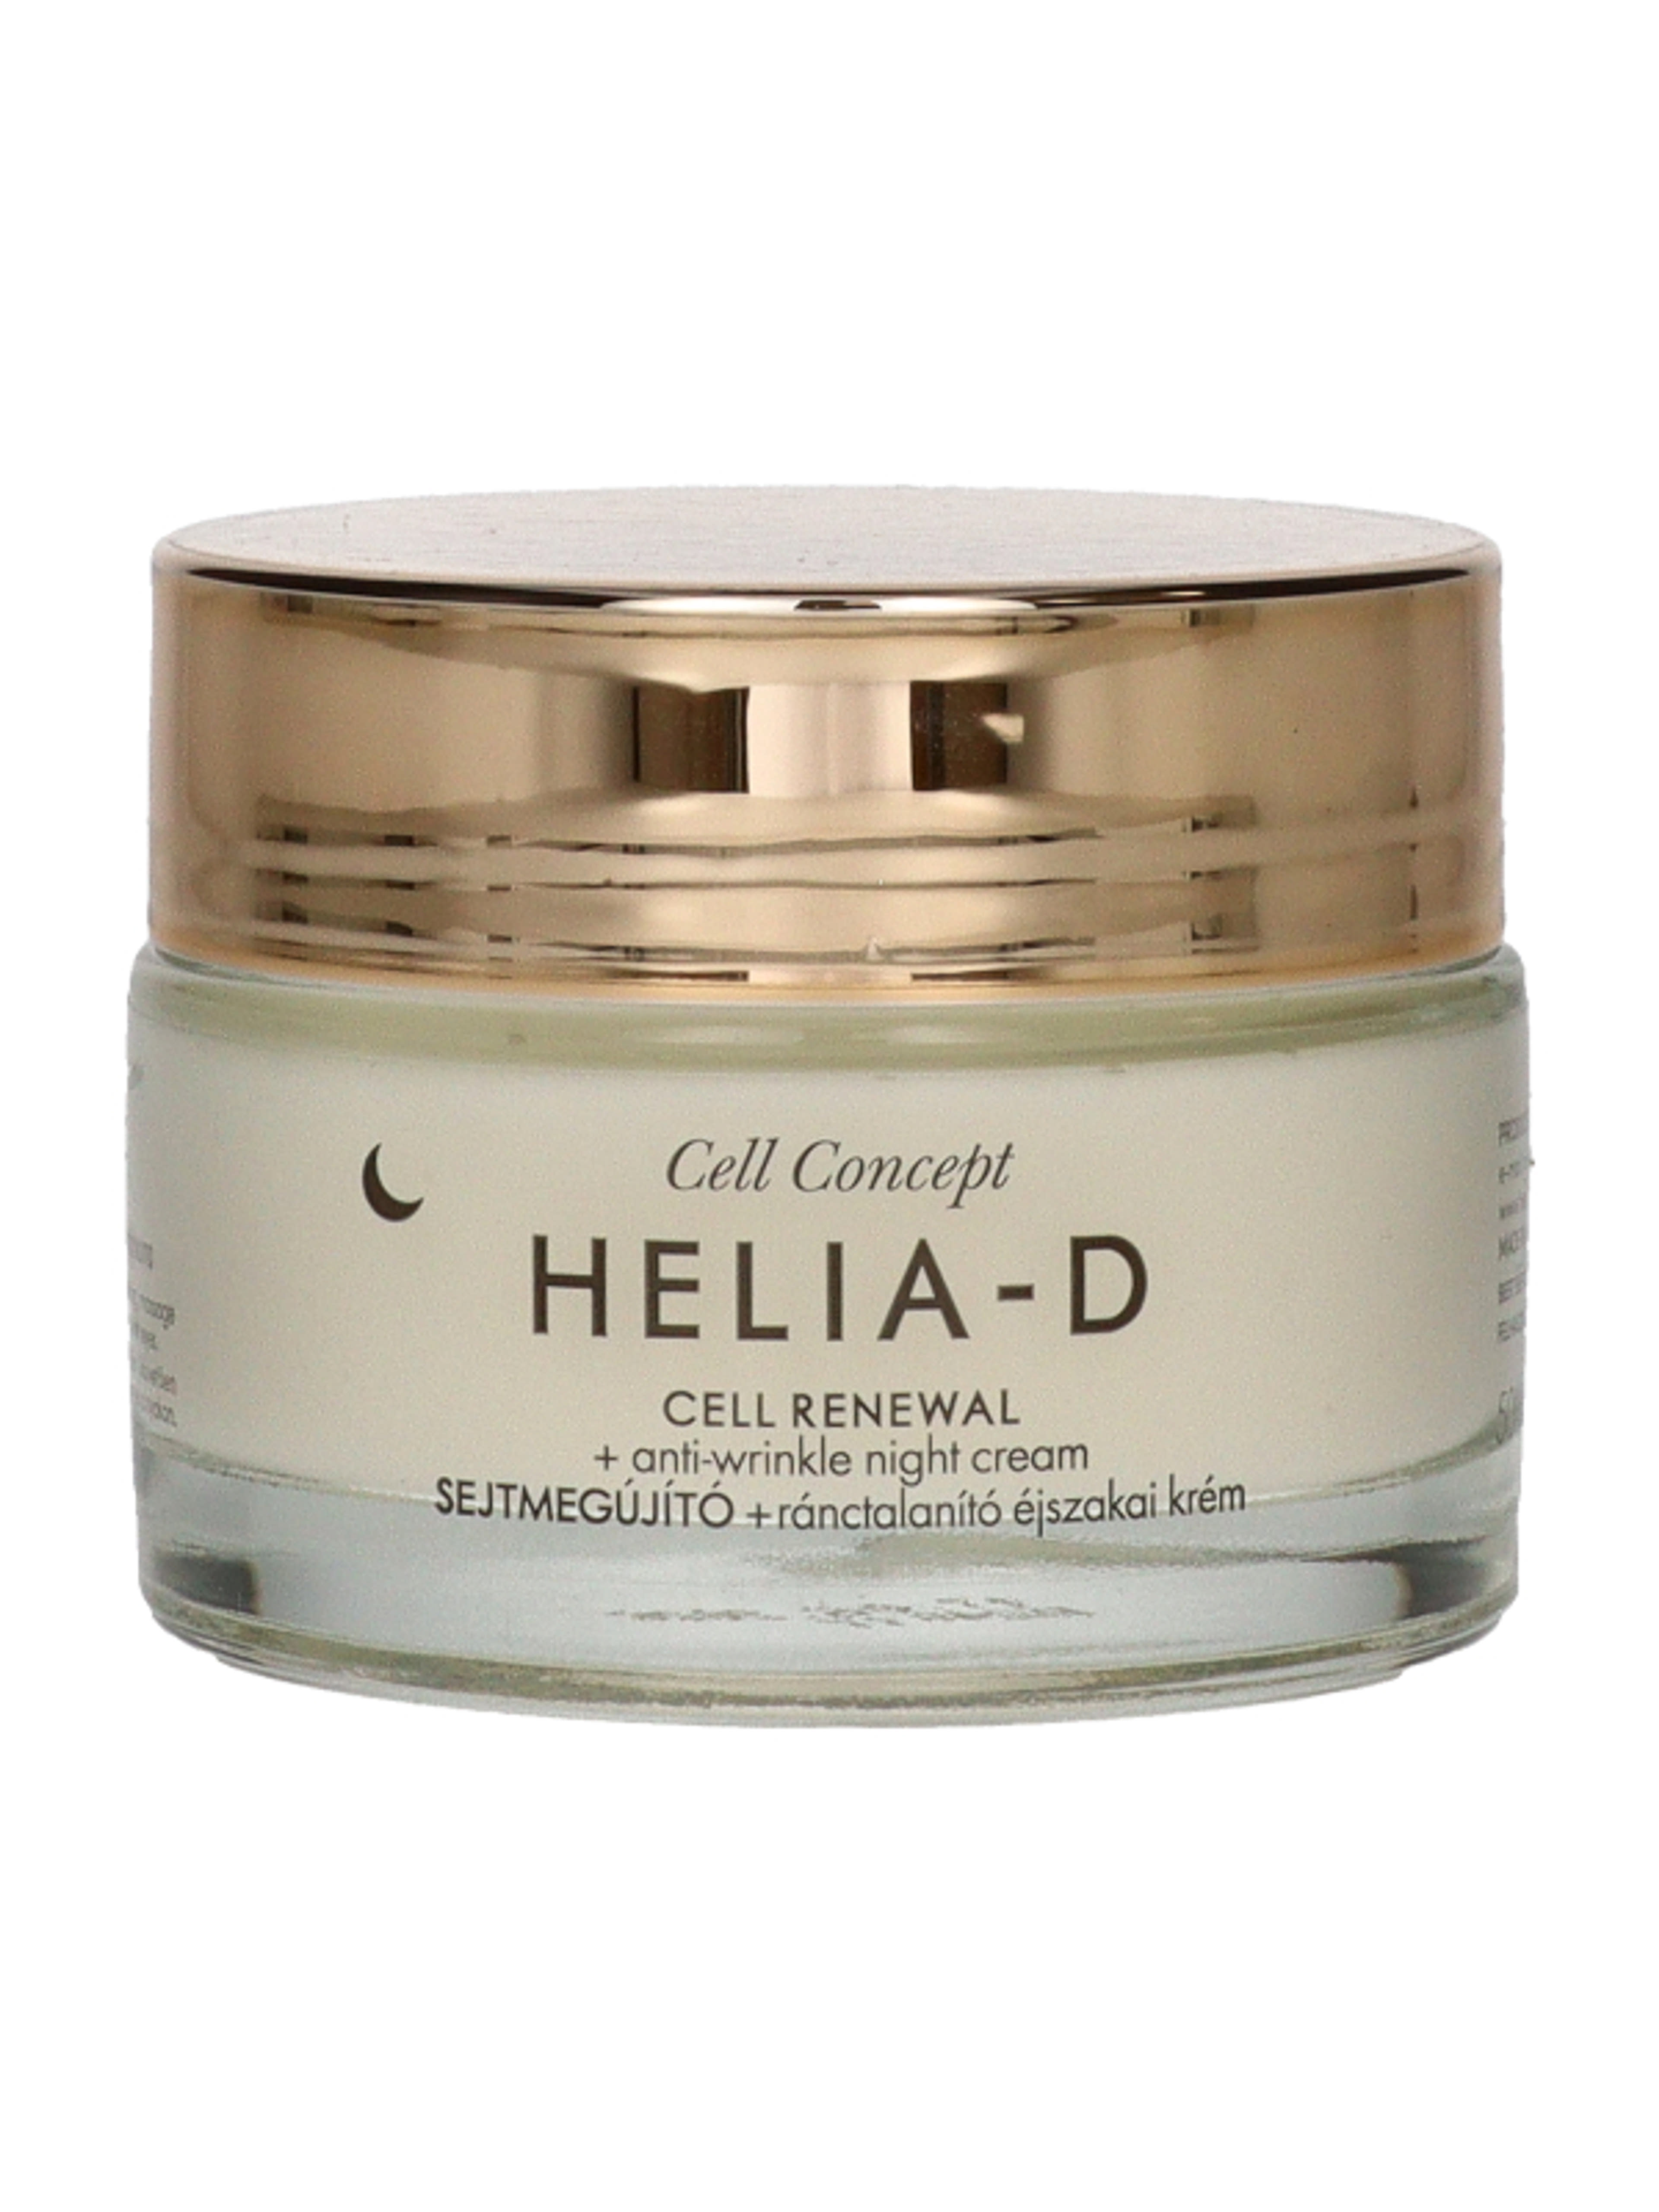 Helia-D Cell Concept sejtmegújító ránctalanító éjszakai krém 55+ - 50 ml-4